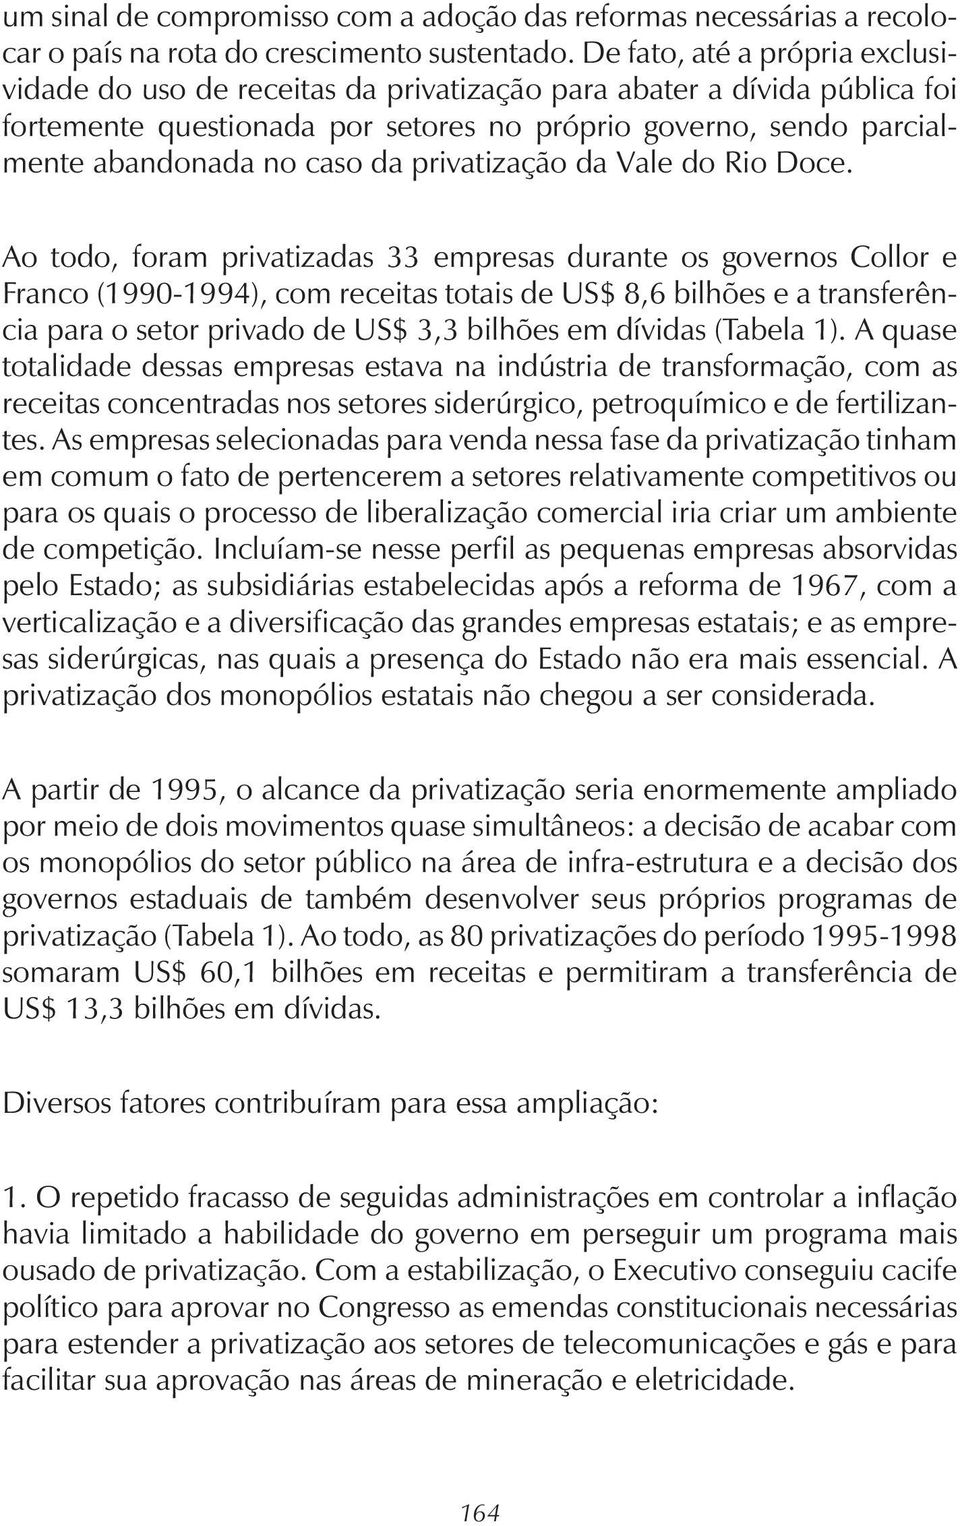 da privatização da Vale do Rio Doce.